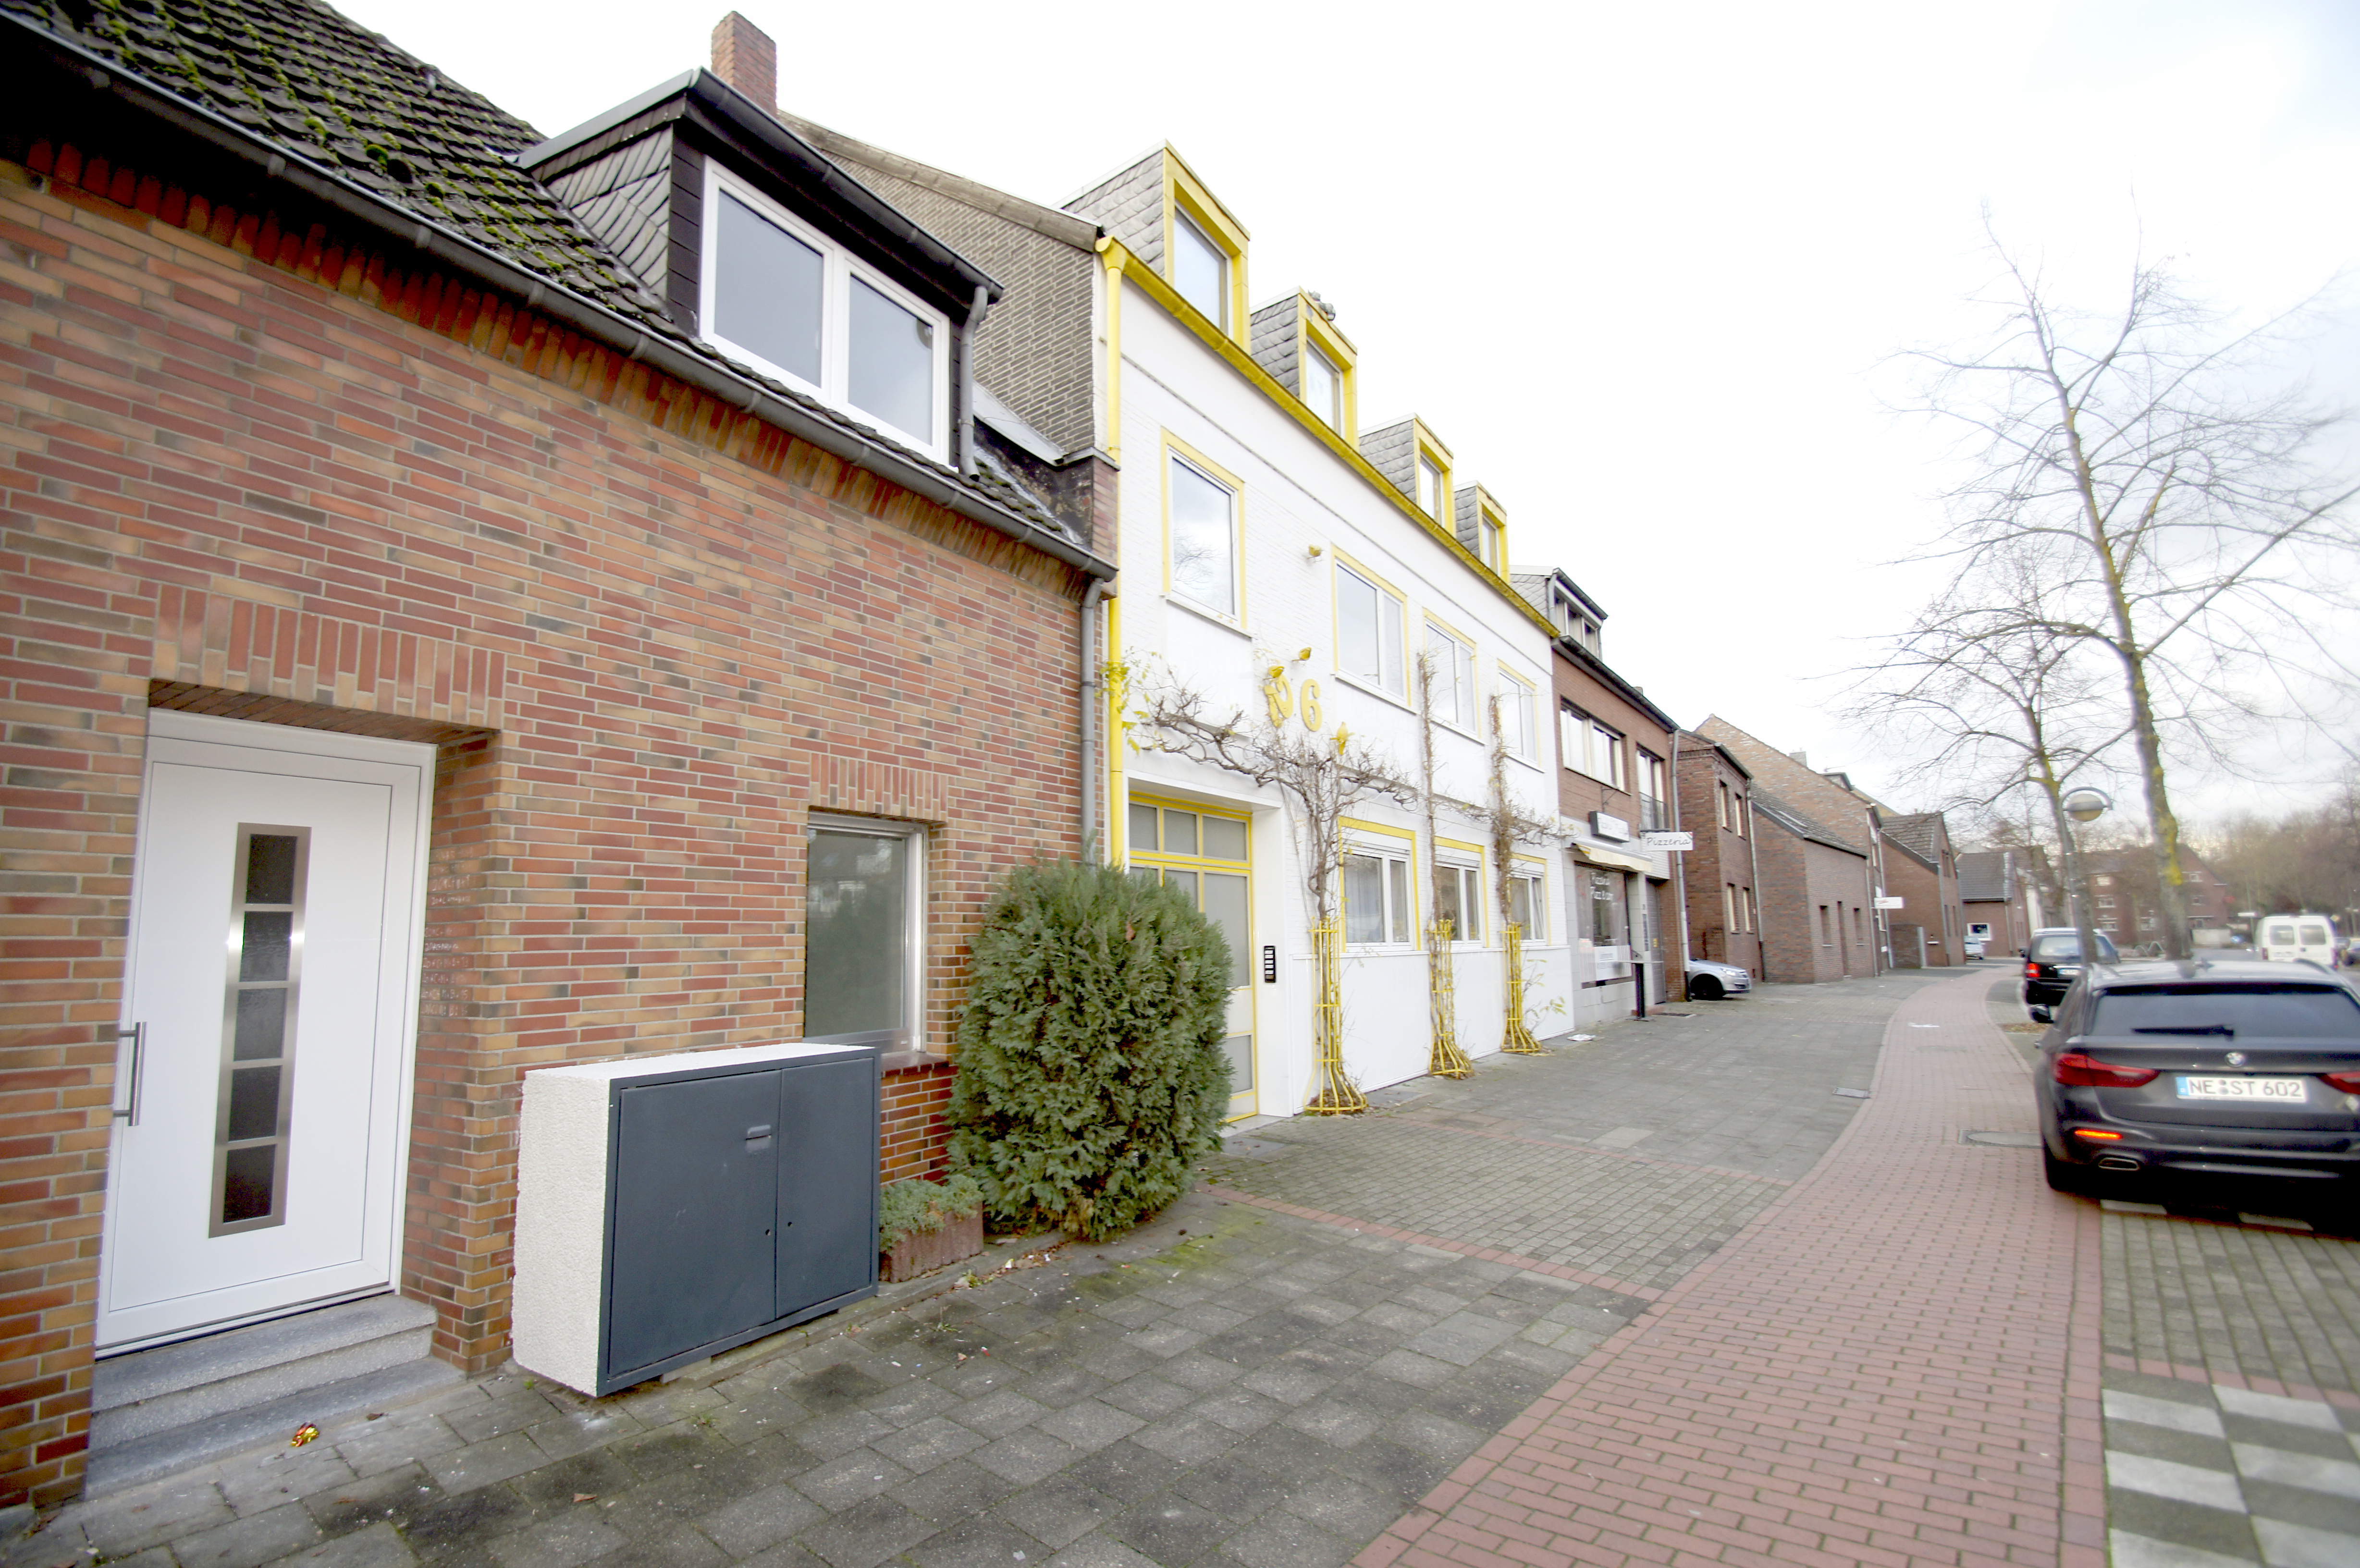 Vermietet! Haus-im-Haus! Helle u. gemütliche Maisonette-Wohnung mit Wohnküche u. Wannenbad in Alt-Weckhoven